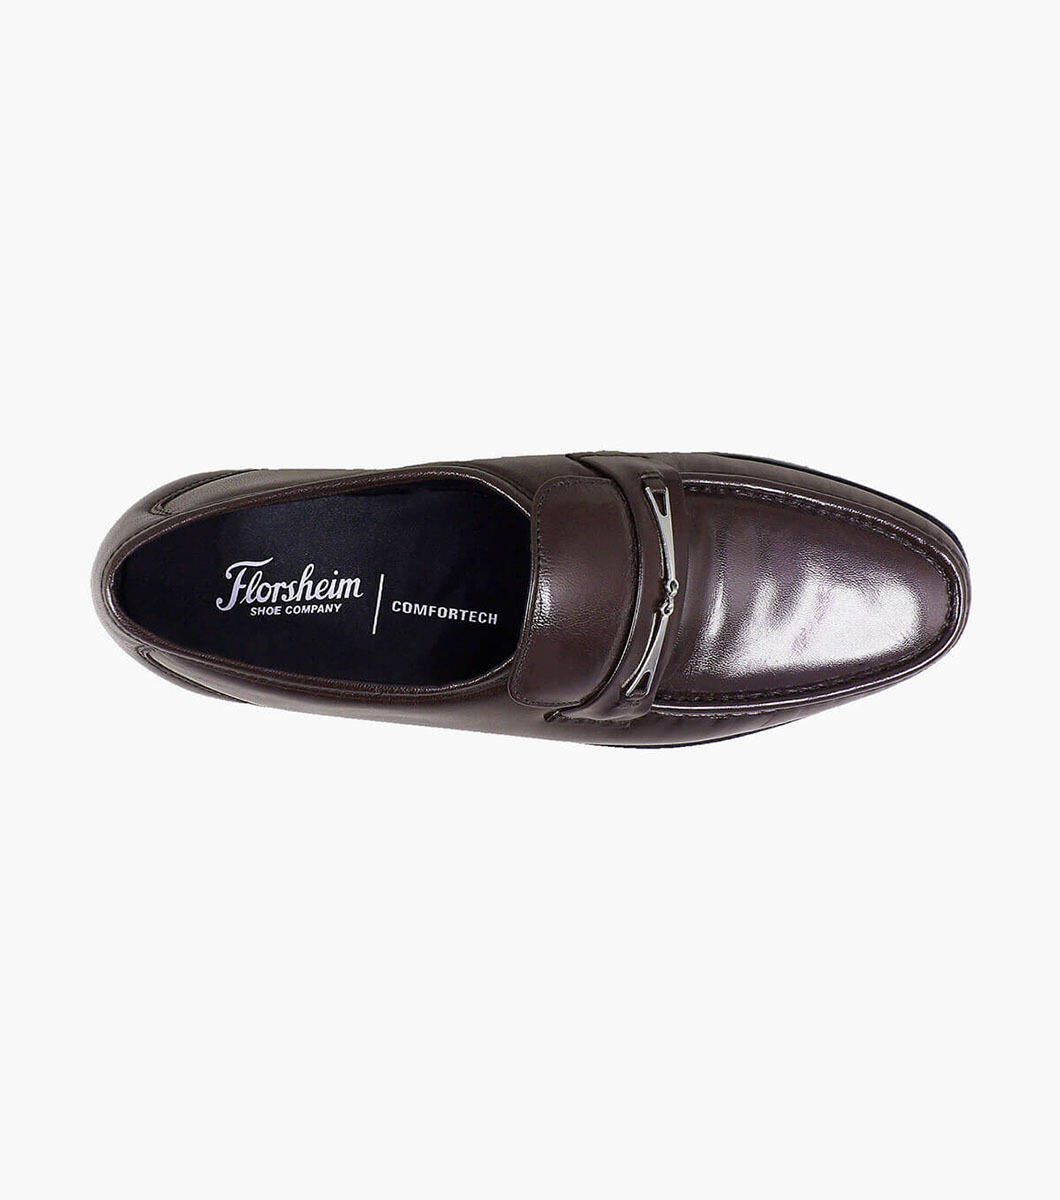 Men's Florsheim Dancer Cognac Loafers | Florsheim Mens shoes Dancer Moc Toe Slip On Cognac kidskin Leather 11002-03 new-Brandy